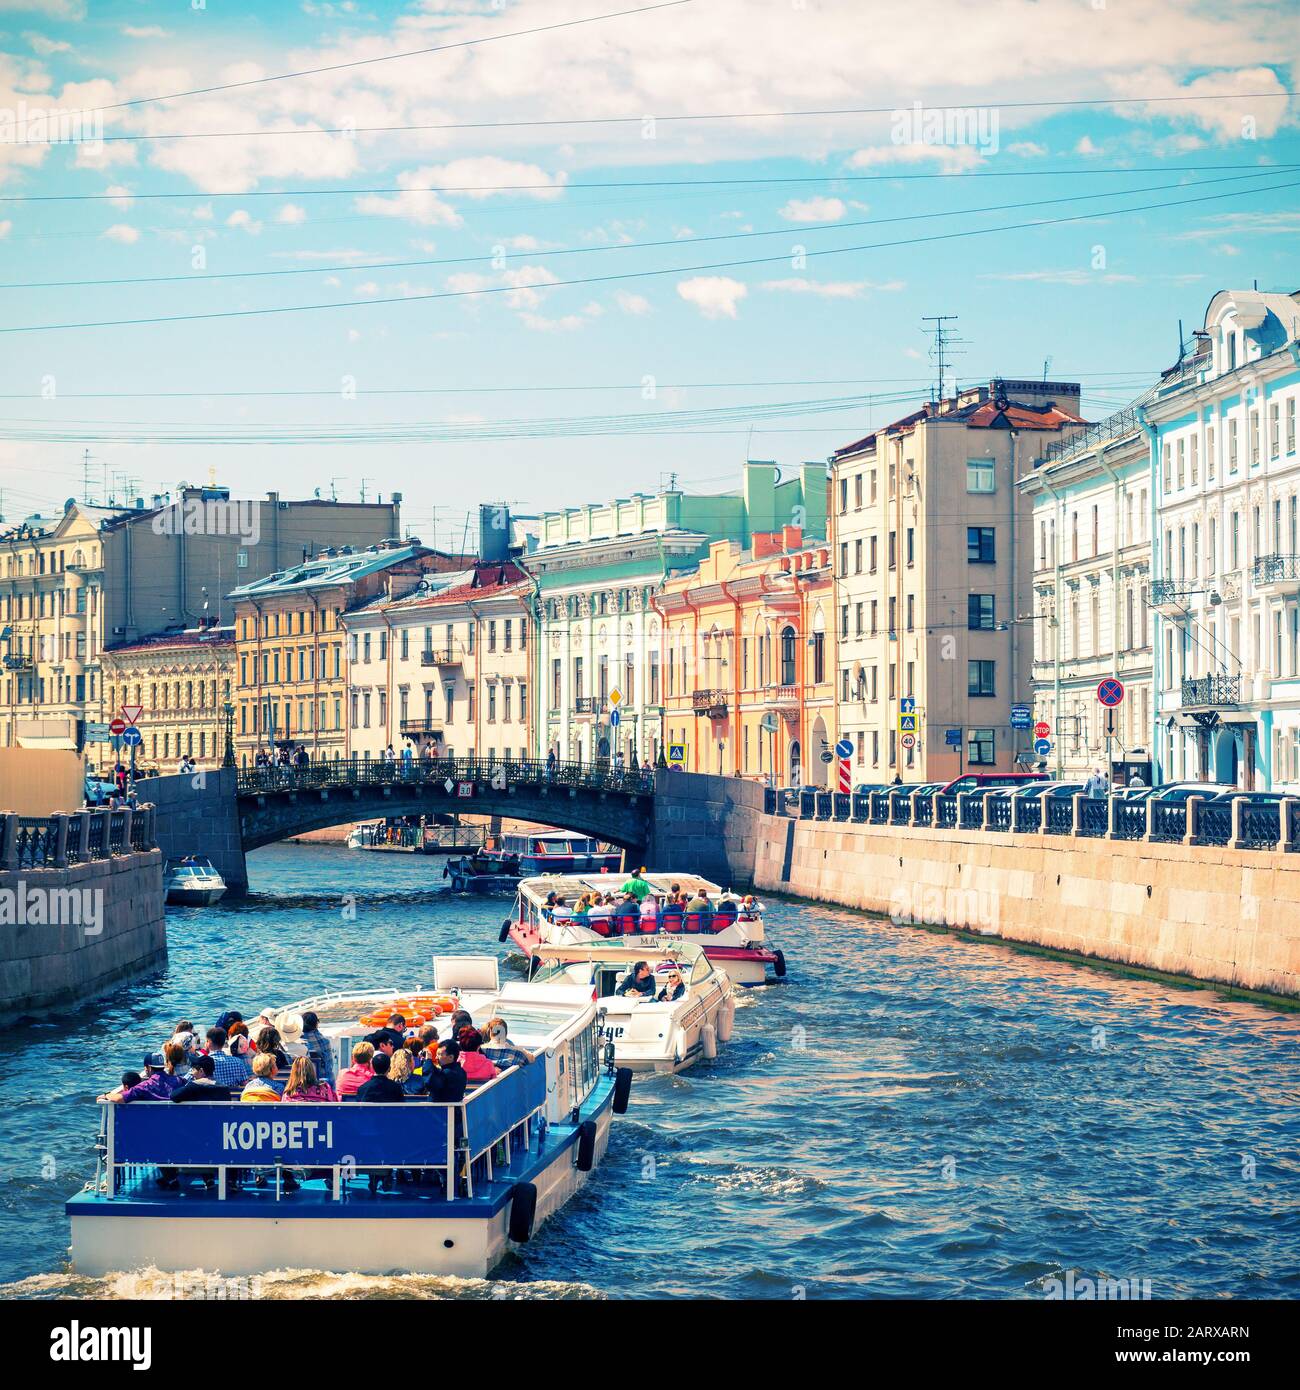 Sankt PETERSBURG, RUSSLAND - 13. JUNI 2014: Touristenboote, die auf dem Fluss Moyka schwimmen. St. Petersburg war die Hauptstadt Russlands und zieht viele Touristen an. Stockfoto